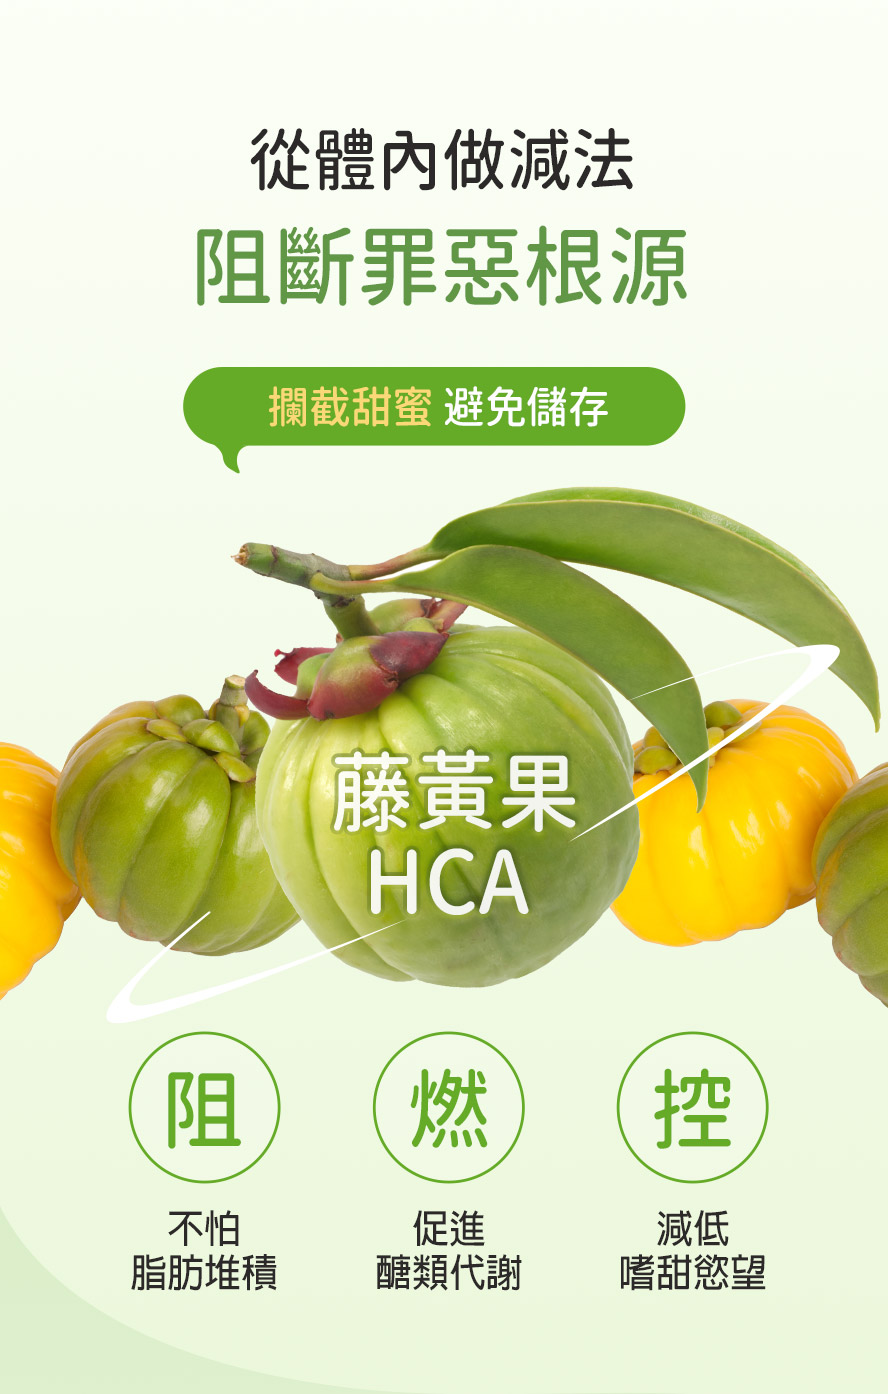 藤黃果的果皮中富含羥基檸檬酸(HCA)，是一種稀有的有機果酸，經證實可降低食慾並阻斷脂肪生成。